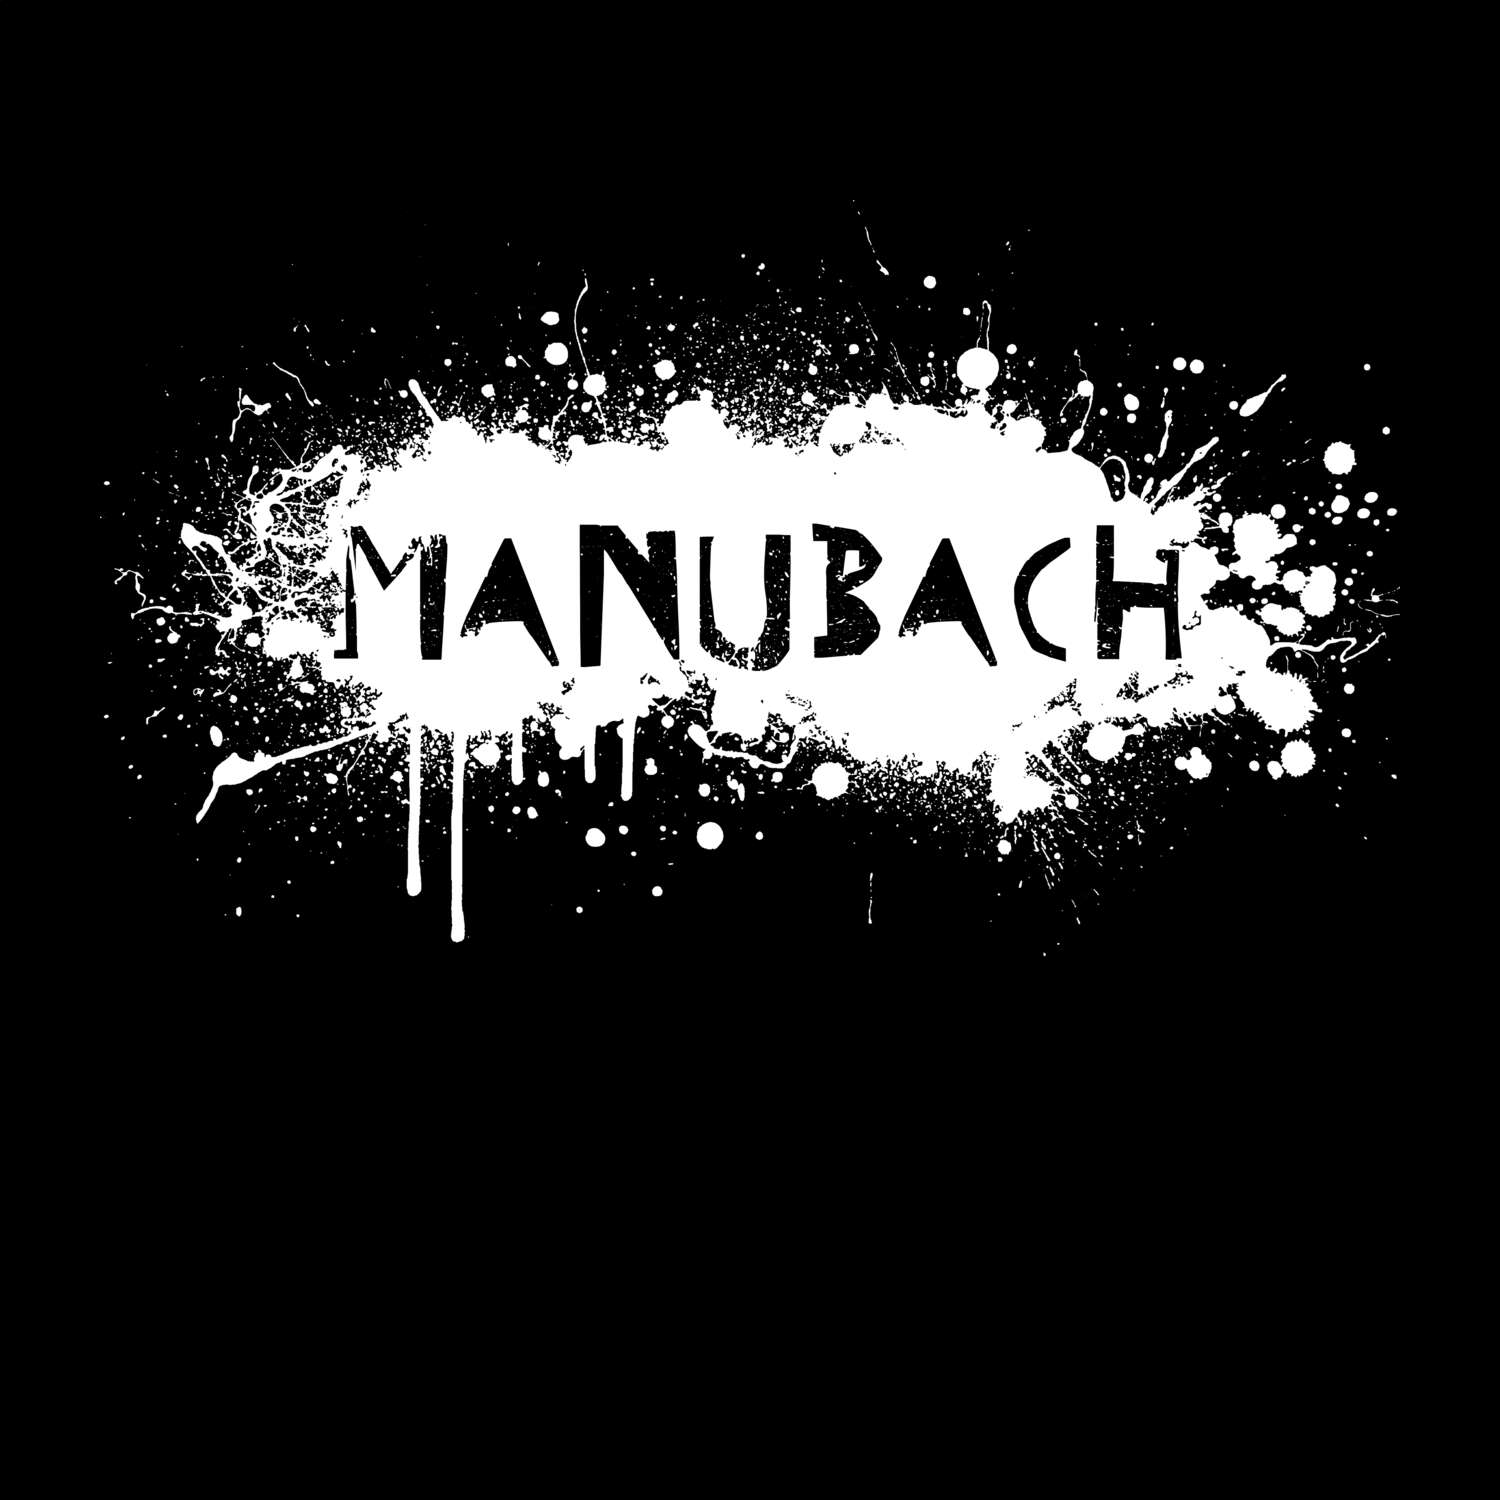 Manubach T-Shirt »Paint Splash Punk«